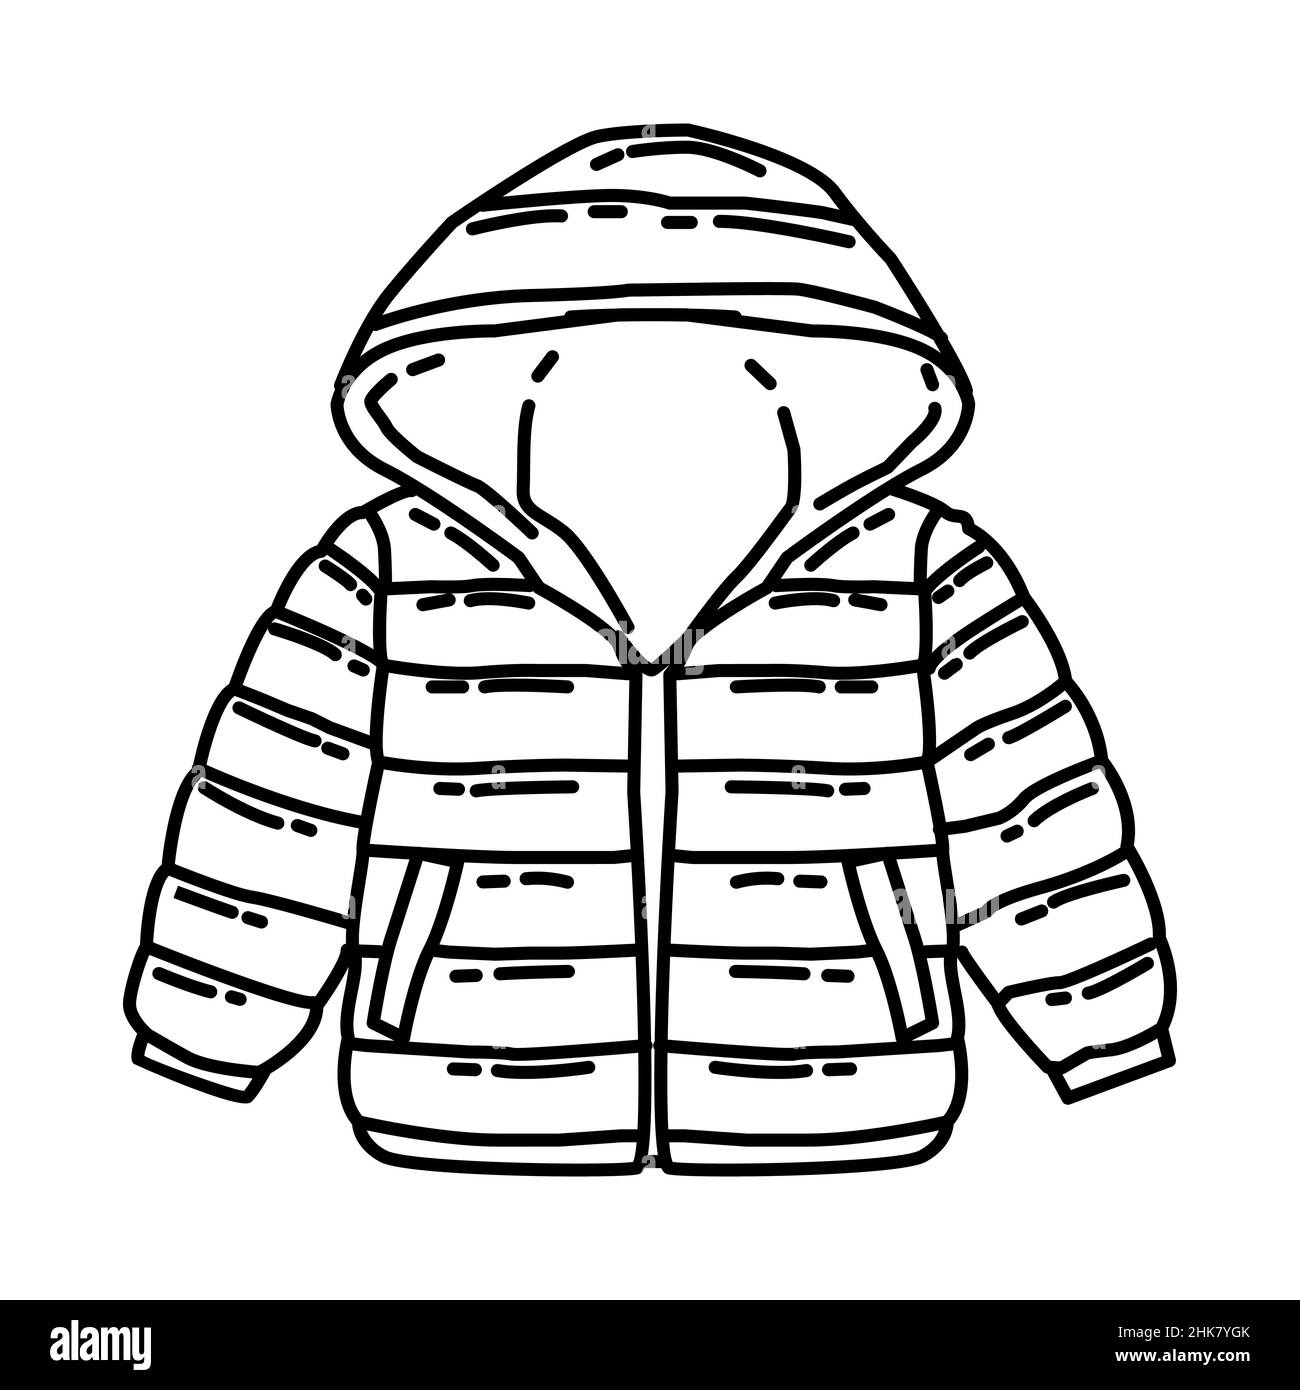 Manteau d'hiver Veste matelassée pour enfant partie des accessoires d'hiver  et activités ensemble d'icônes dessinées à la main Vector Image Vectorielle  Stock - Alamy